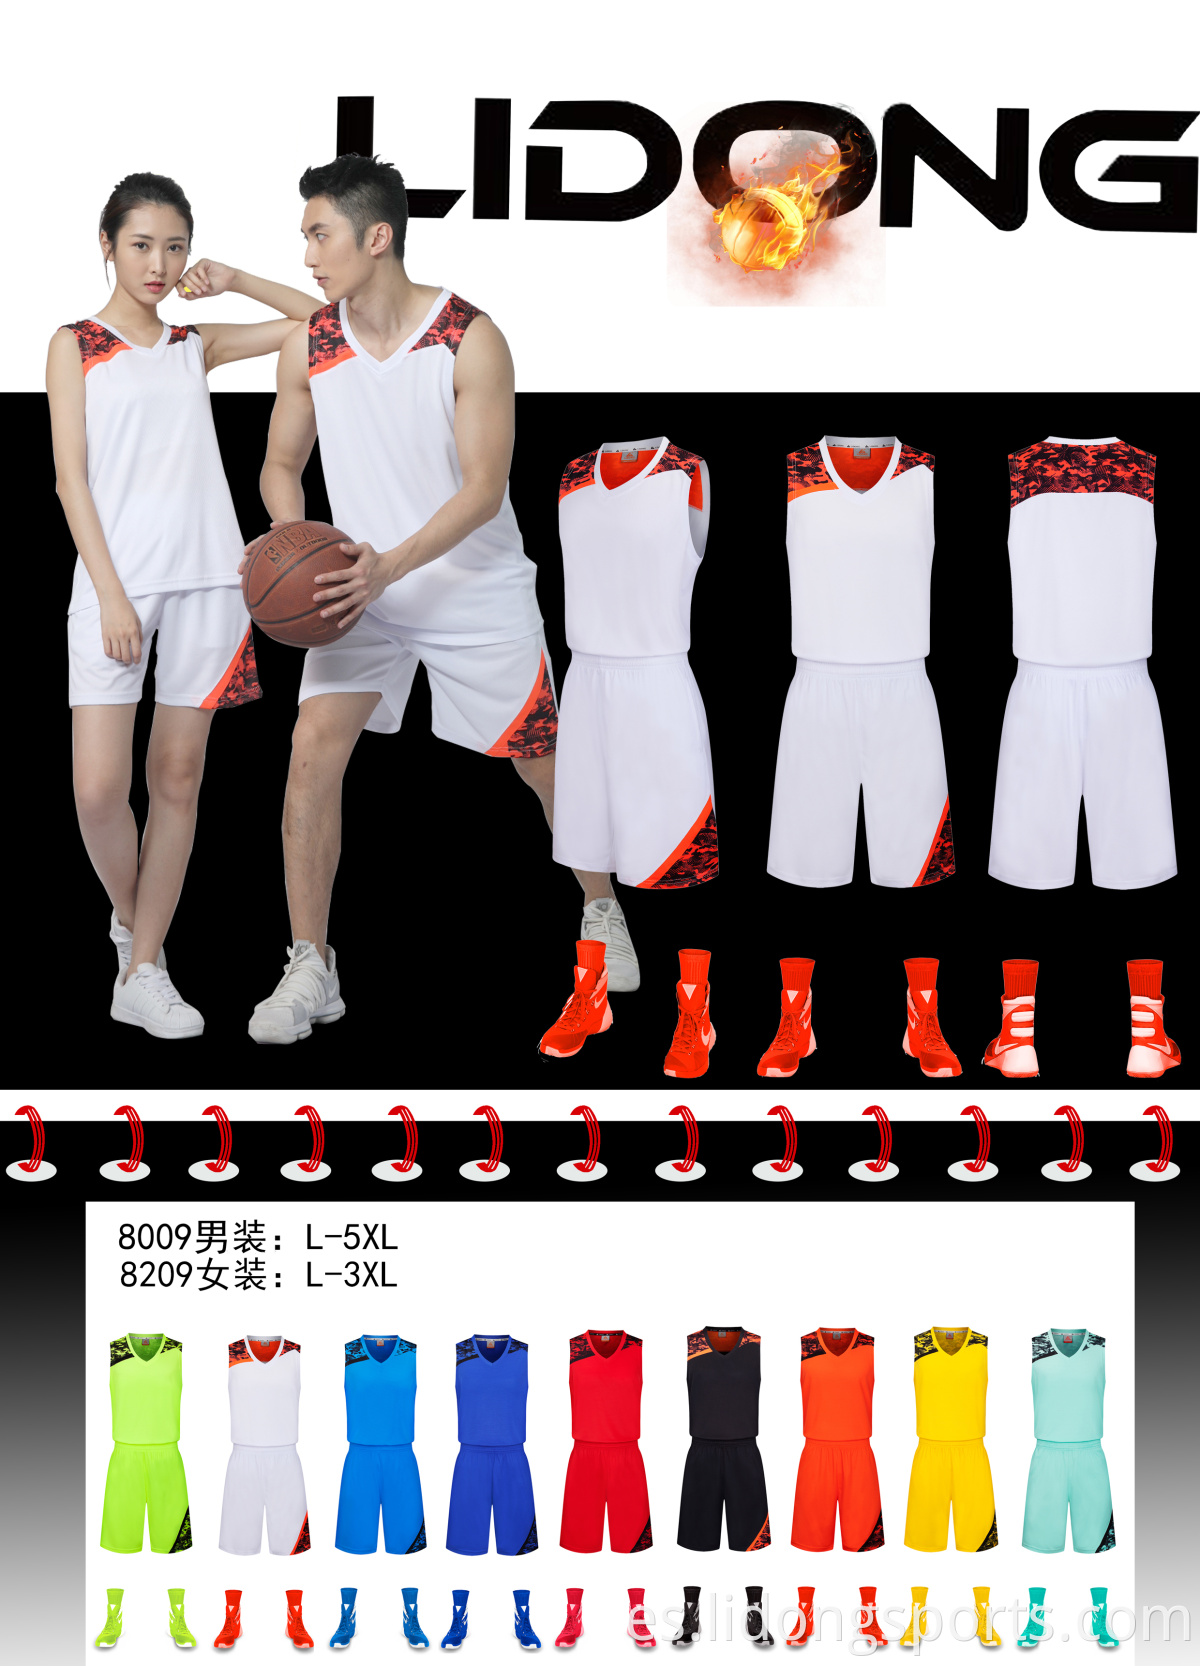 Uniformes sublimados de baloncesto más reciente diseño de camisetas de baloncesto al por mayor 2021